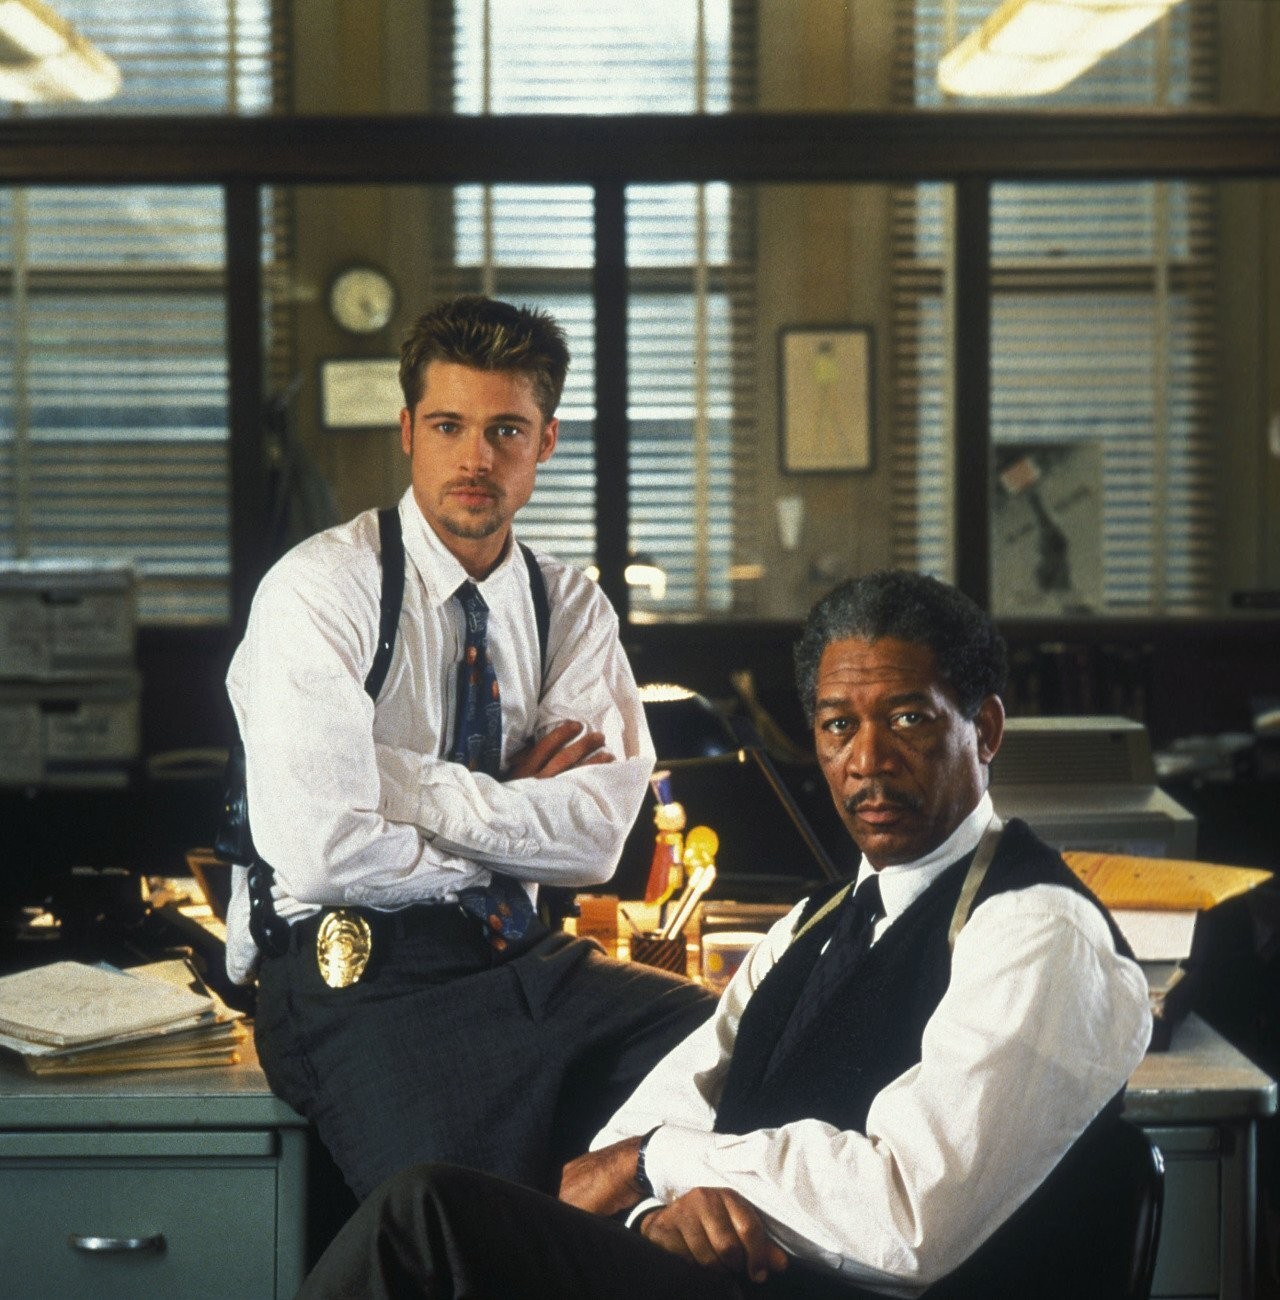 Brad Pitt and Morgan Freeman in Se7en